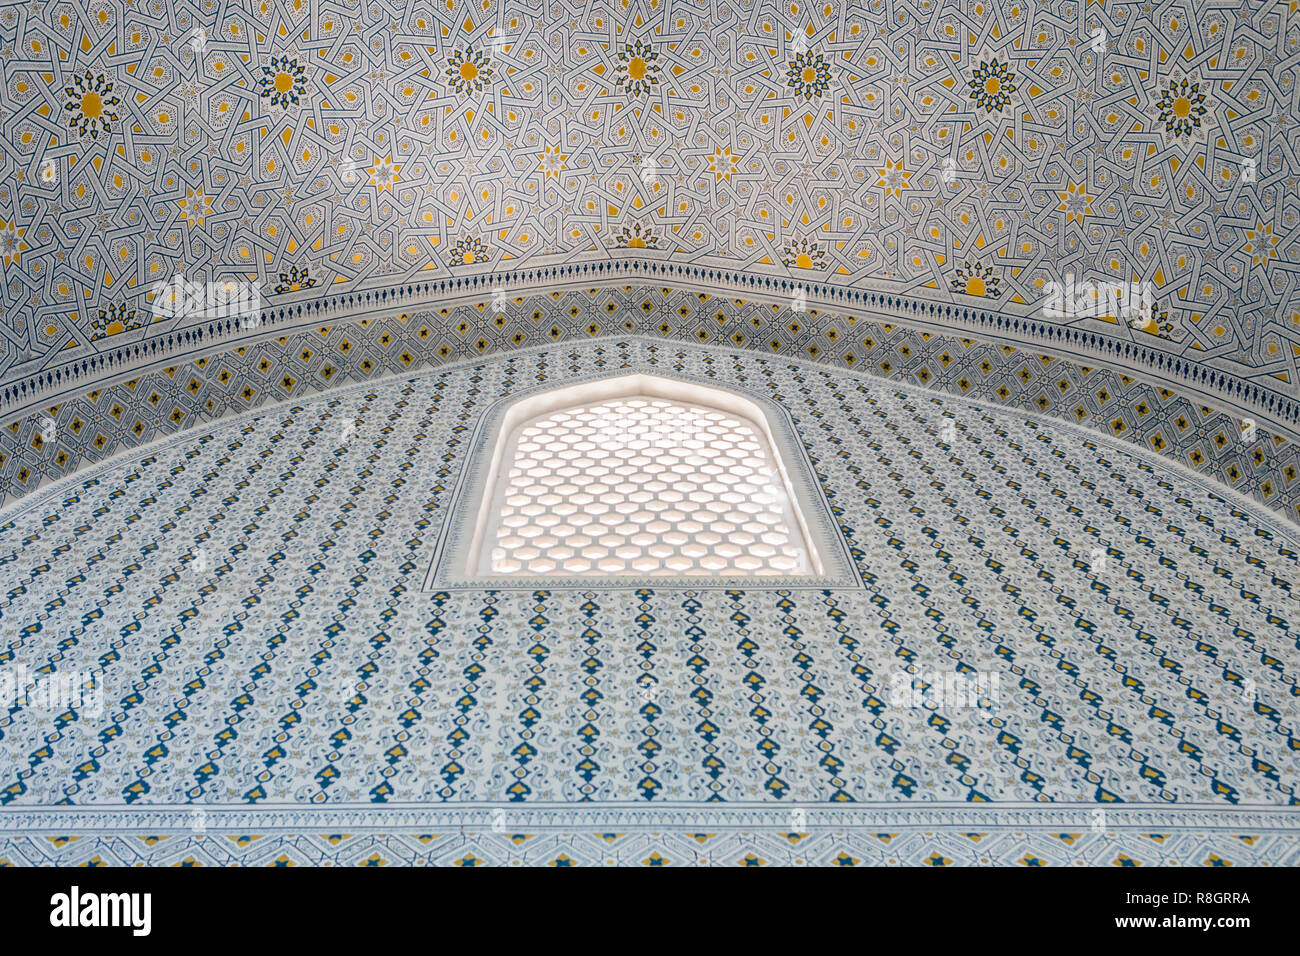 Detalle, ornamentación, dentro de la mezquita de Bibi-Khanym, Samarcanda, Uzbekistán Foto de stock